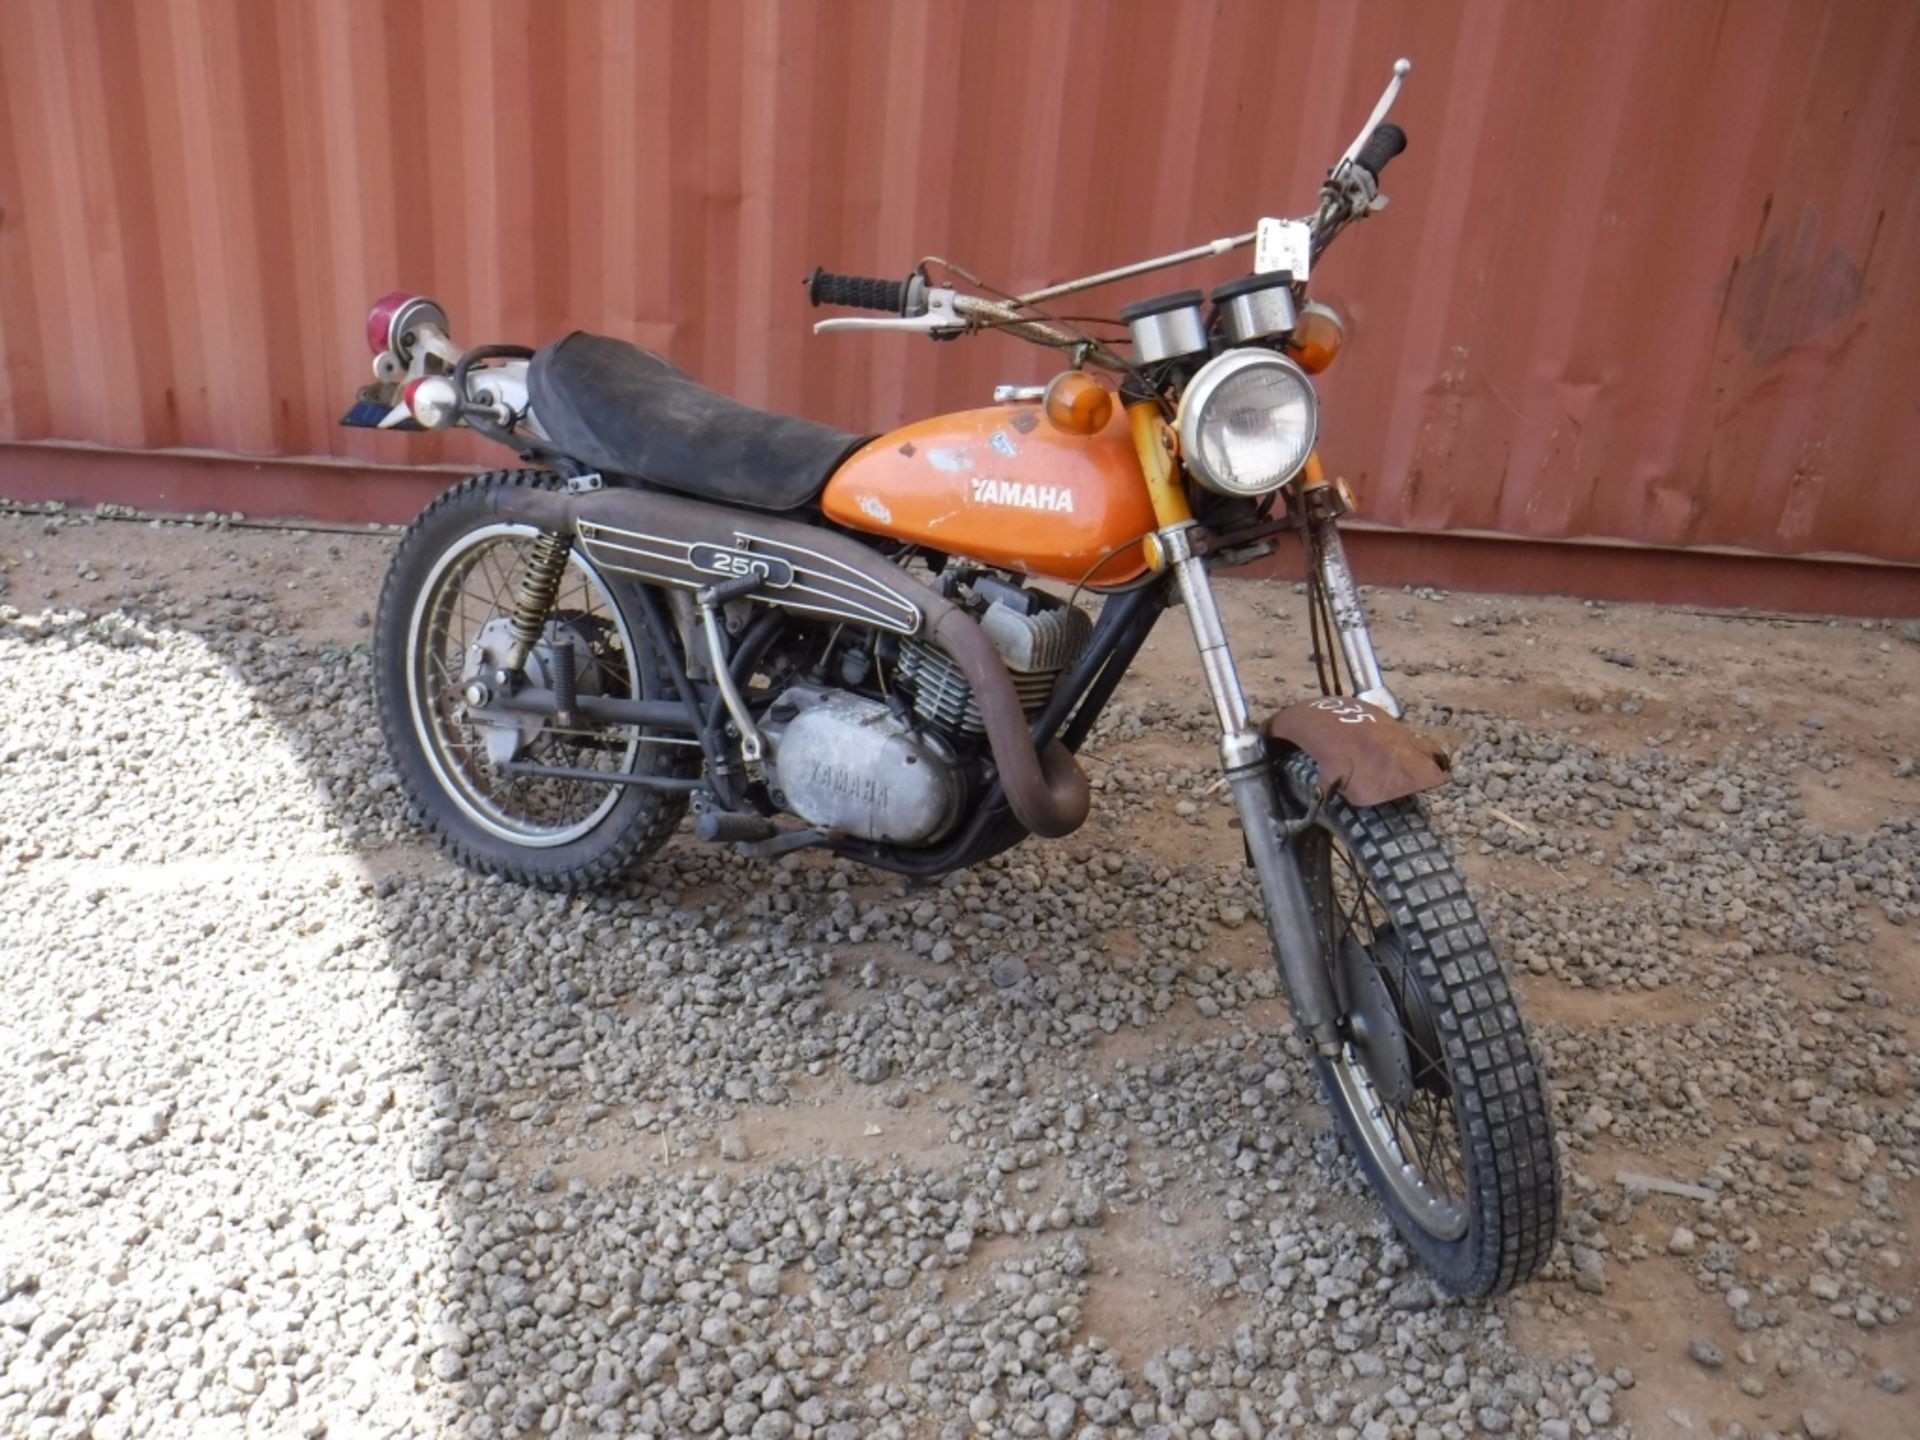 Yamaha 250 Dirt Bike, - Image 2 of 14